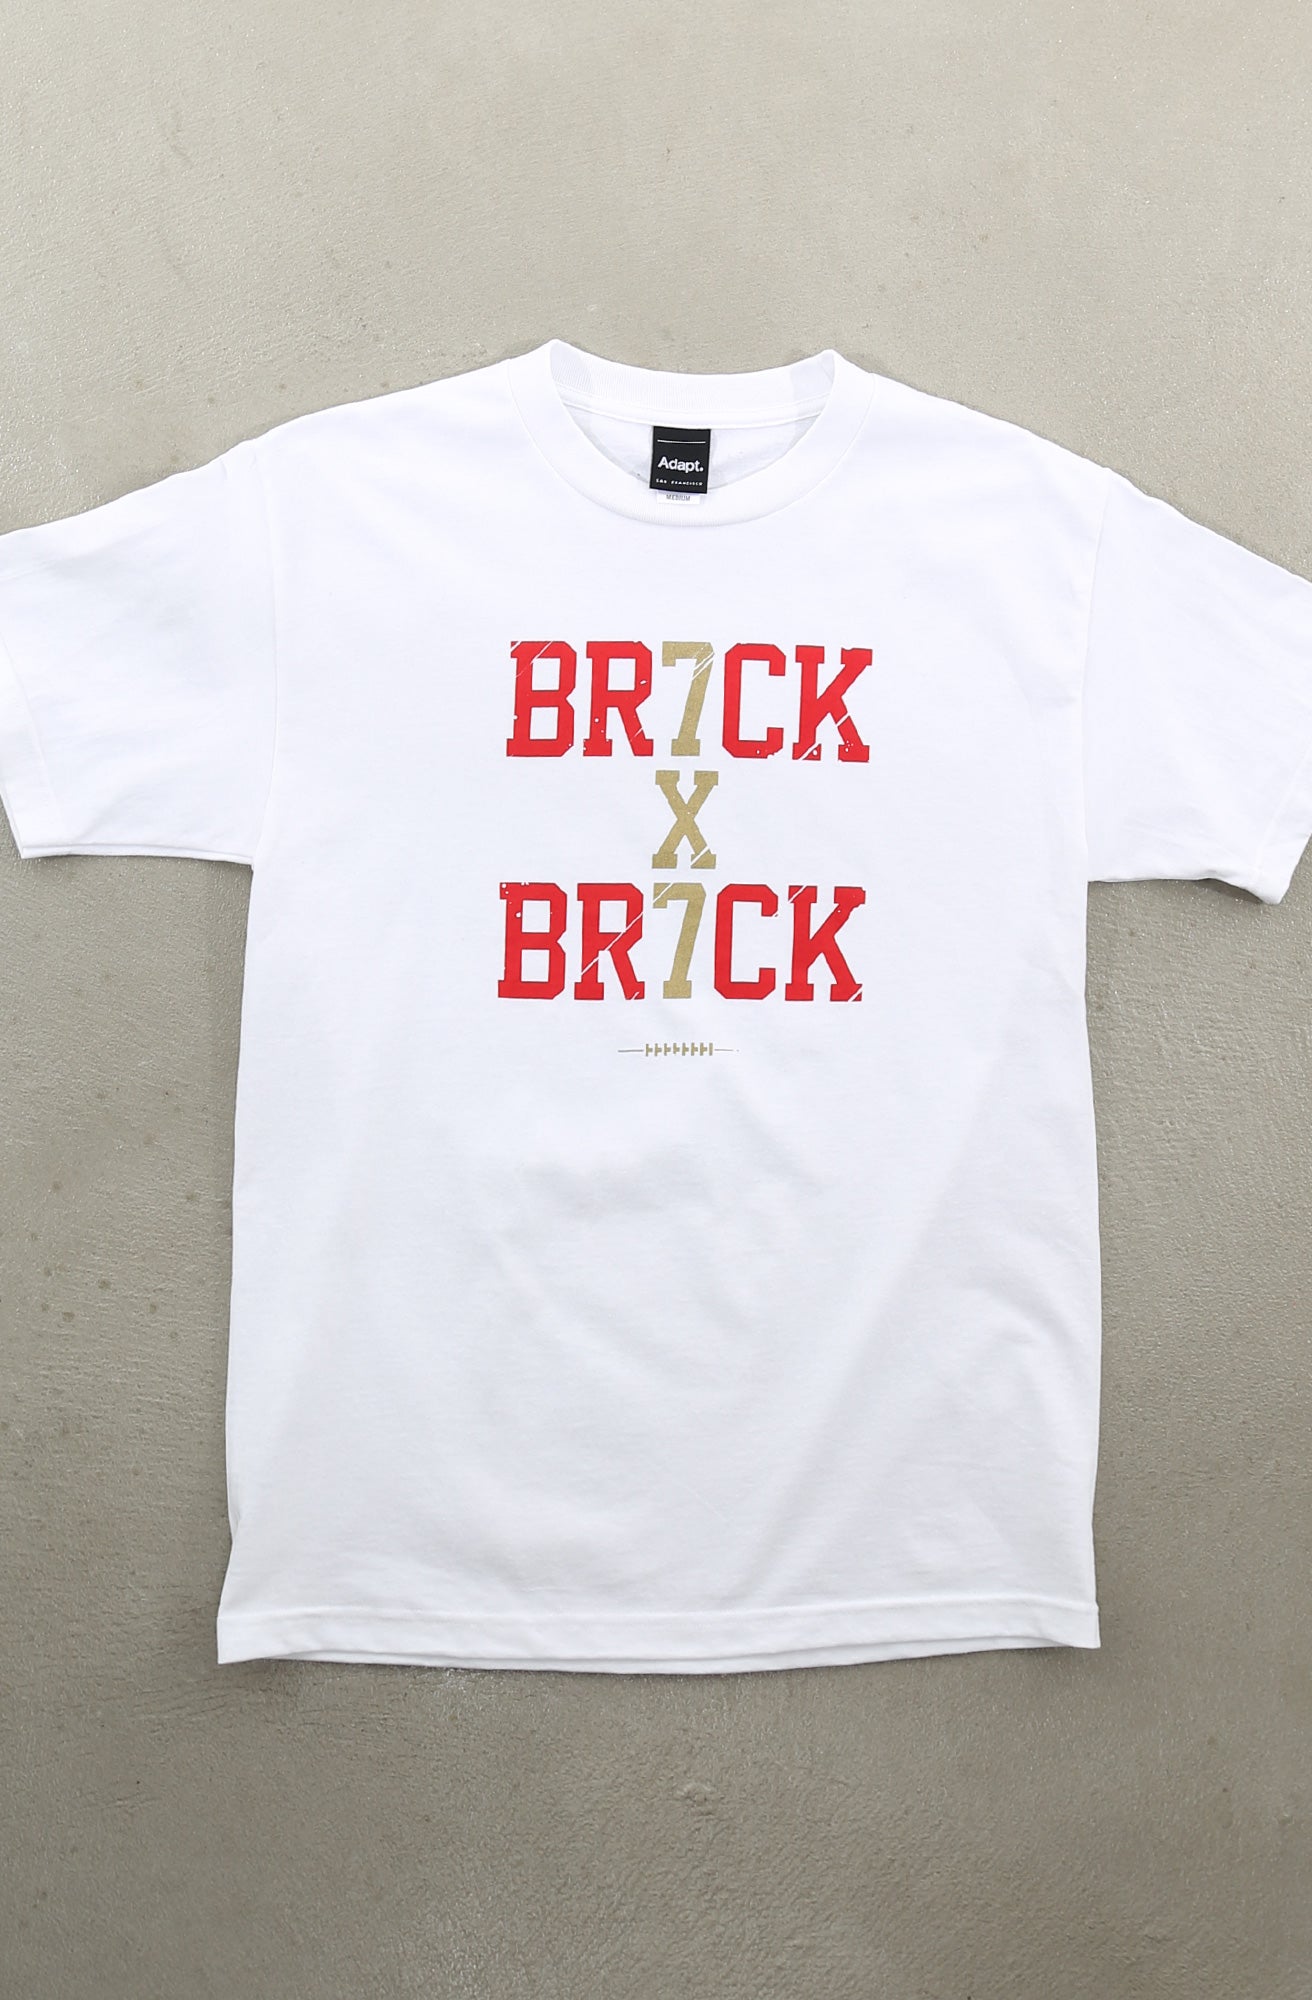 Brick By Brick (Men's White Tee)